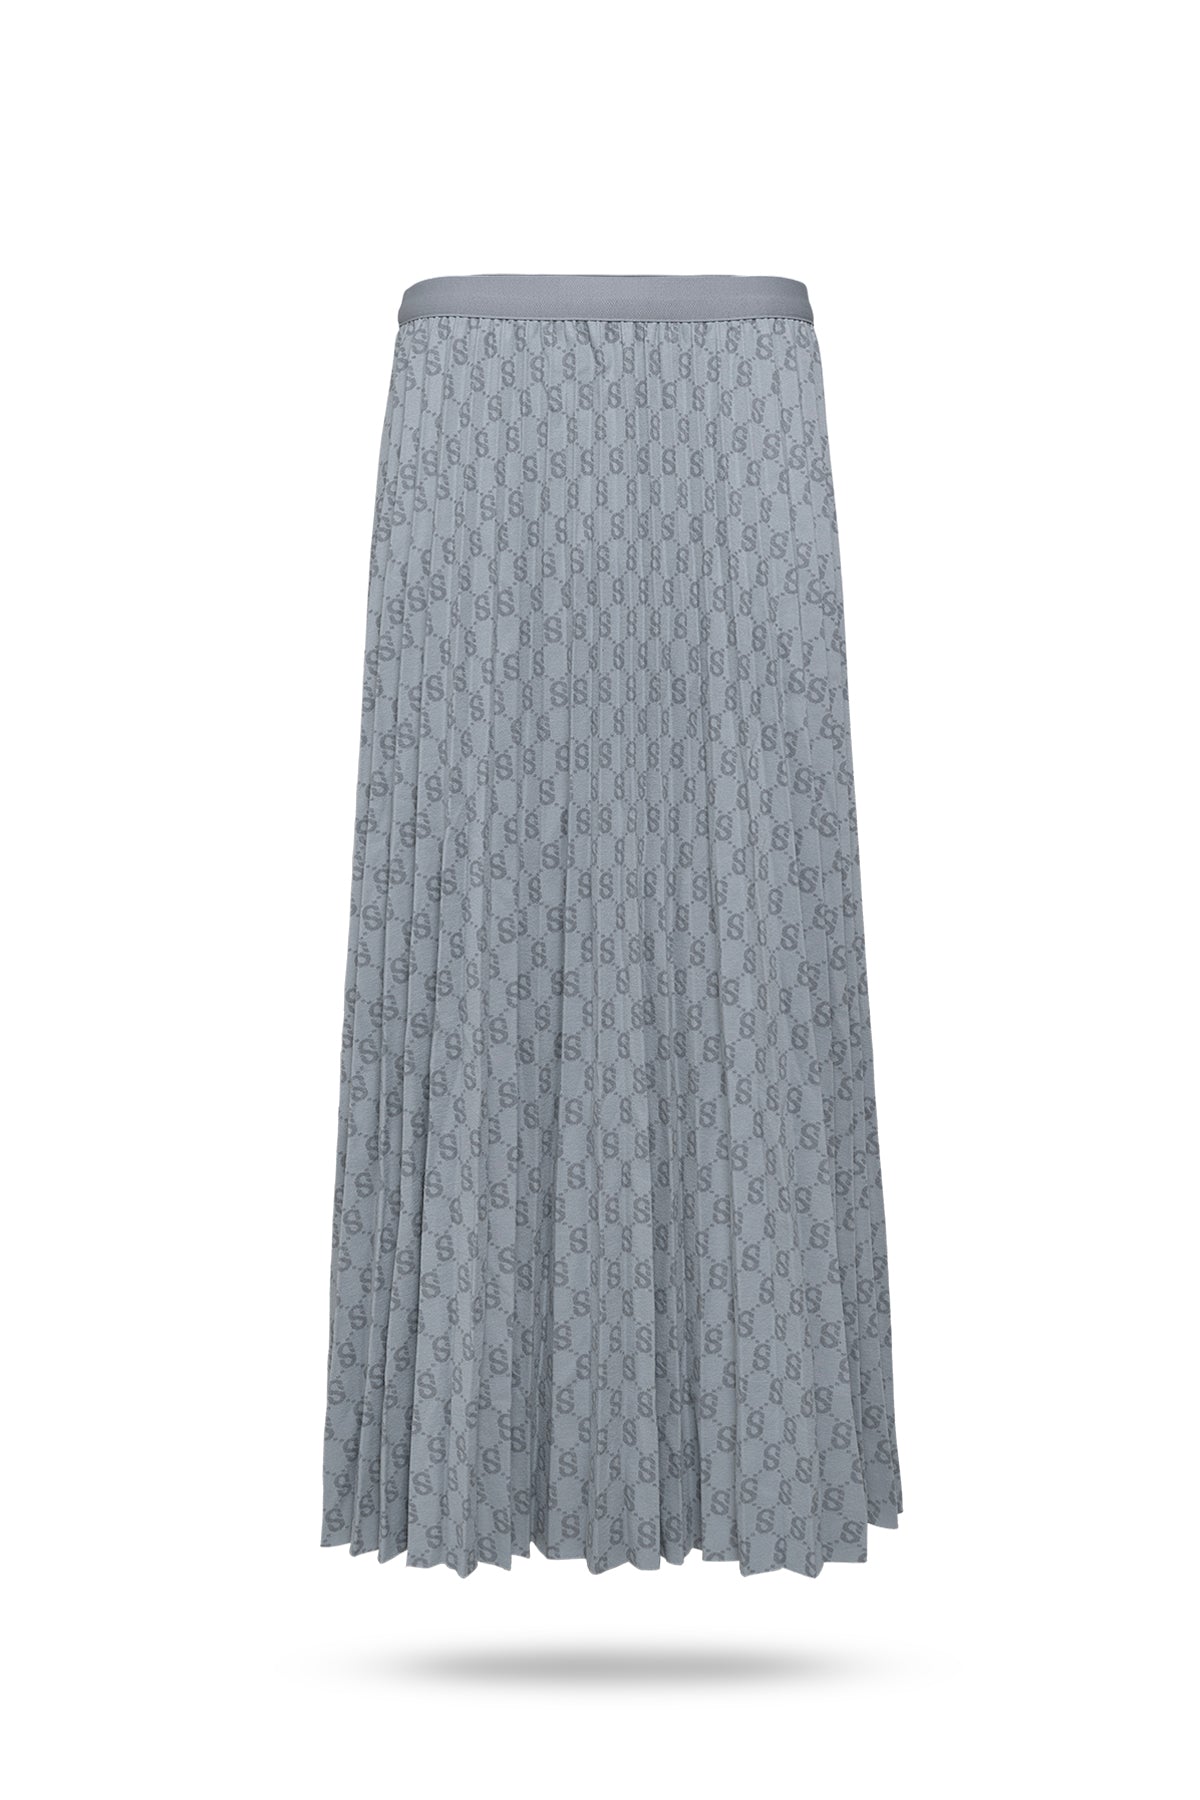 Monogram Pleated Skirt - Grayish